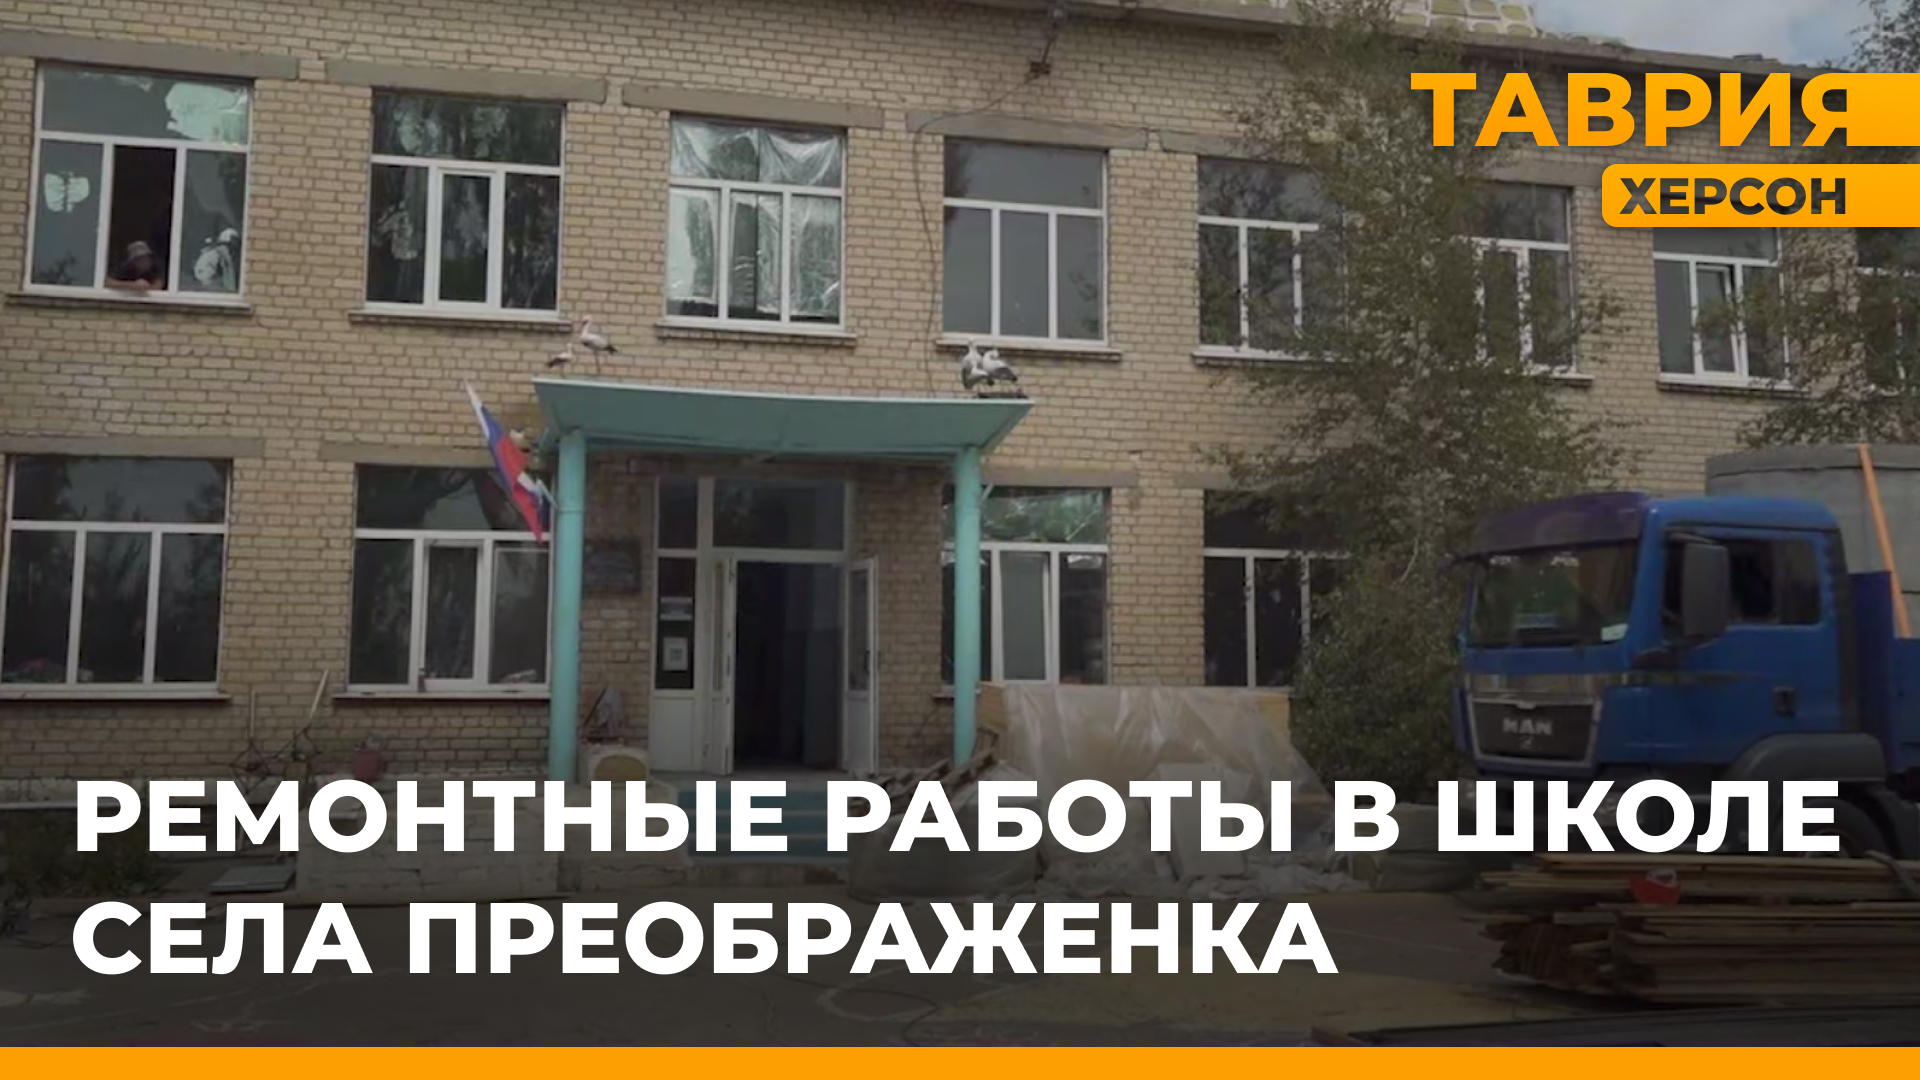 Председатель правительства региона проинспектировал ход ремонтных работ в школе села Преображенка